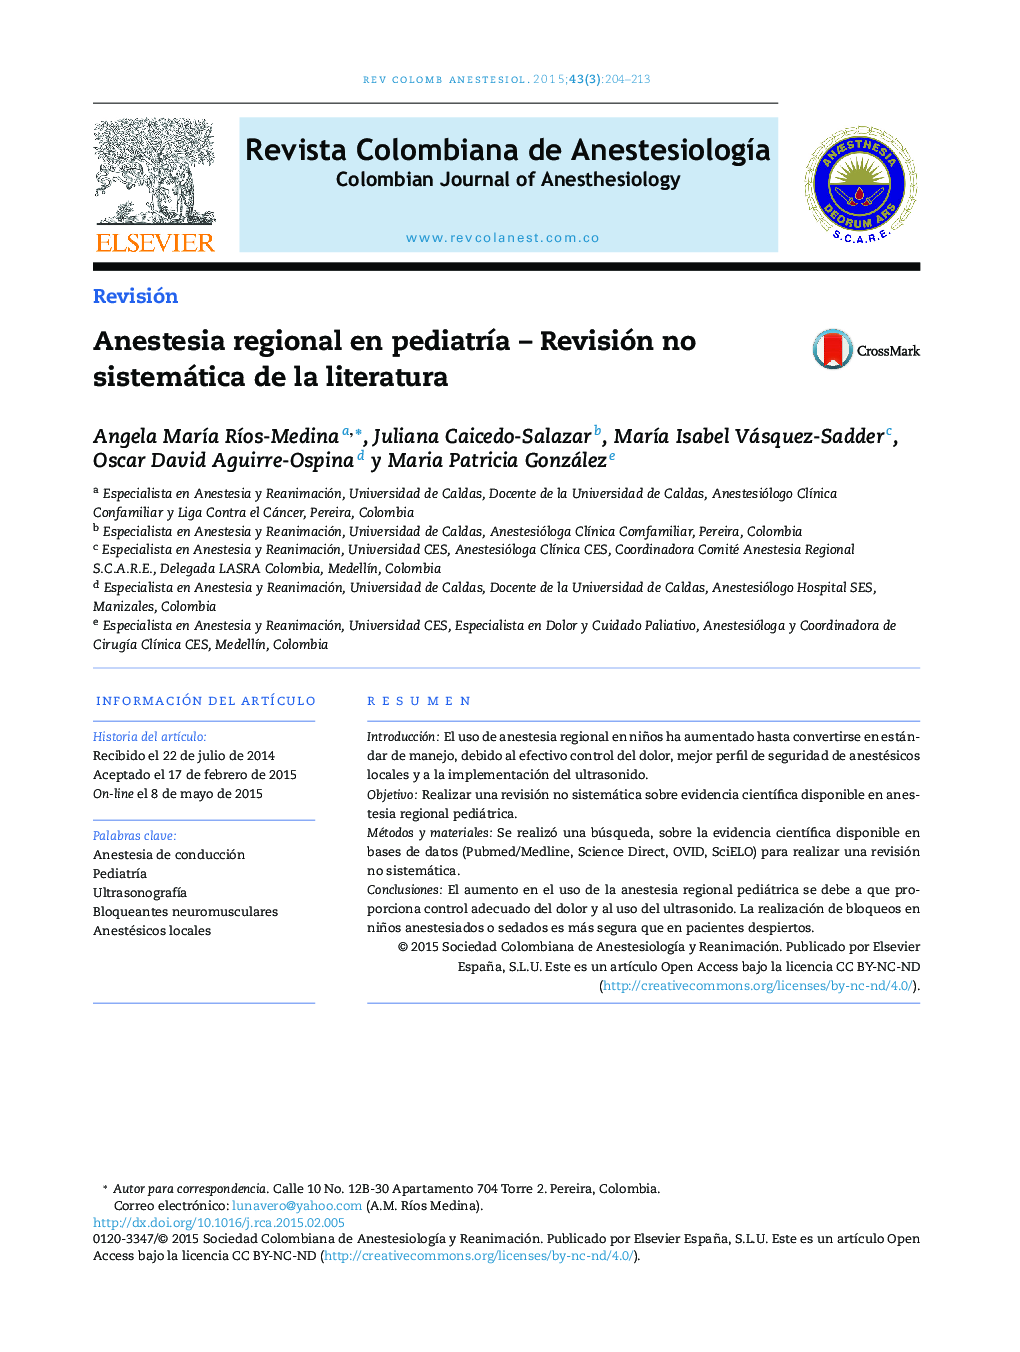 Anestesia regional en pediatría – Revisión no sistemática de la literatura